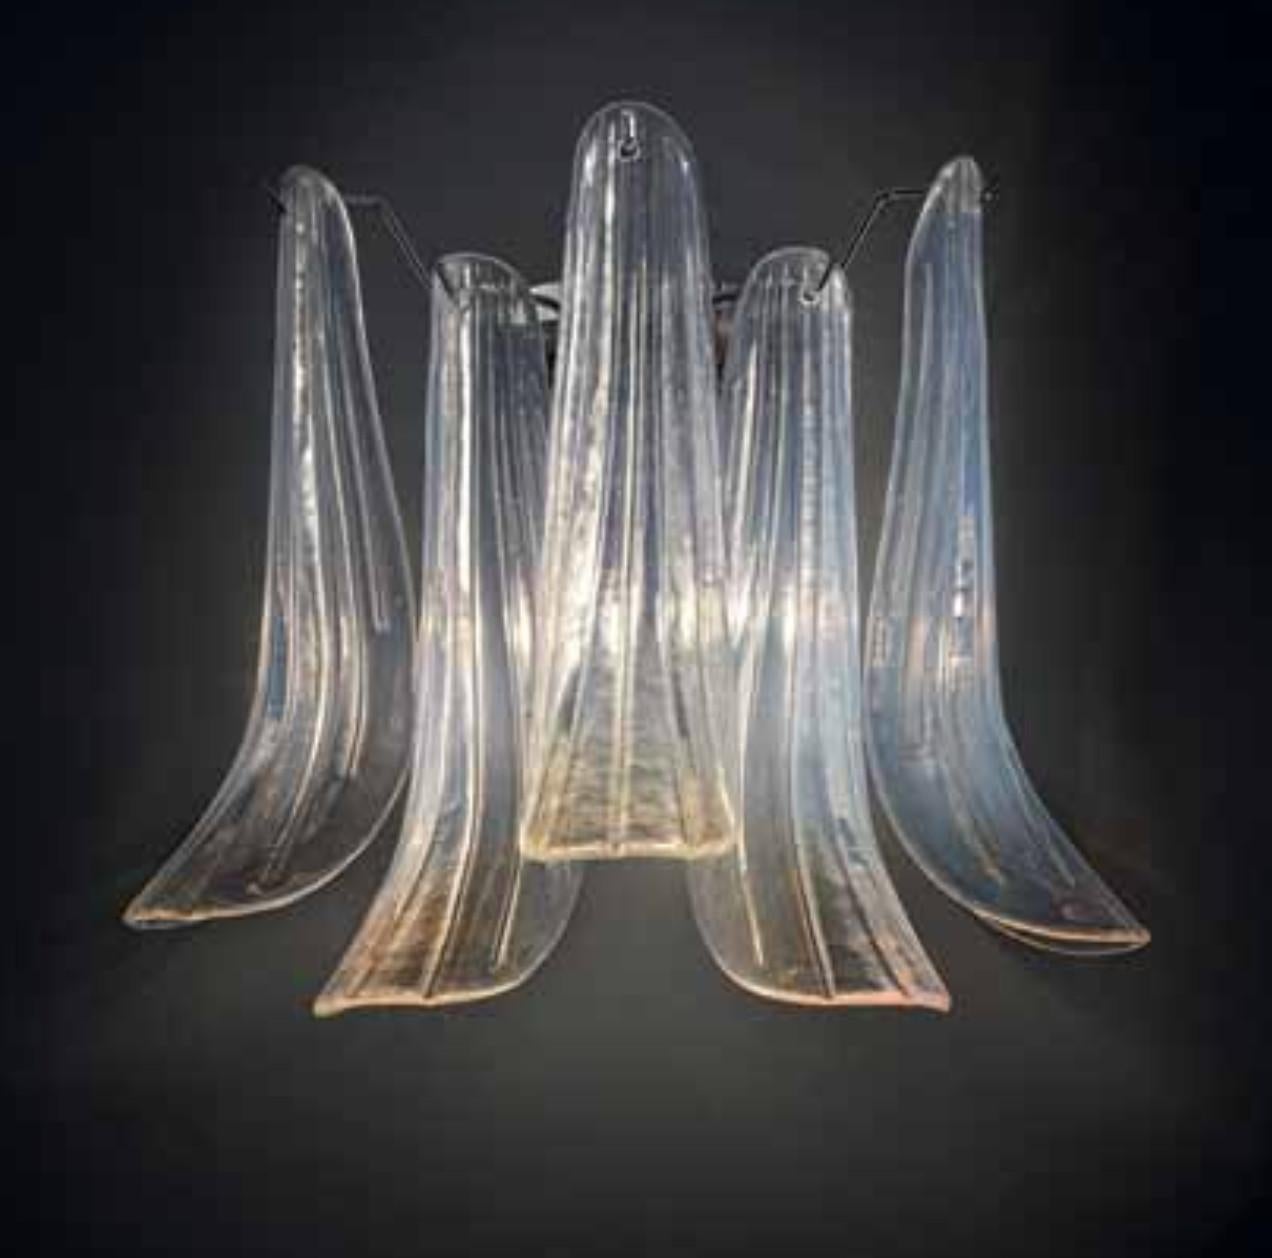 Italienische Wandleuchte mit schillernden Blütenblättern aus opalem Murano-Glas auf verchromtem Metallrahmen / inspiriert von Mazzega Made in Italy
Maße: Breite 14 Zoll, Höhe 14 Zoll
2 Leuchten / Typ E12 oder E14 / je max. 40W
Nur auf Bestellung /